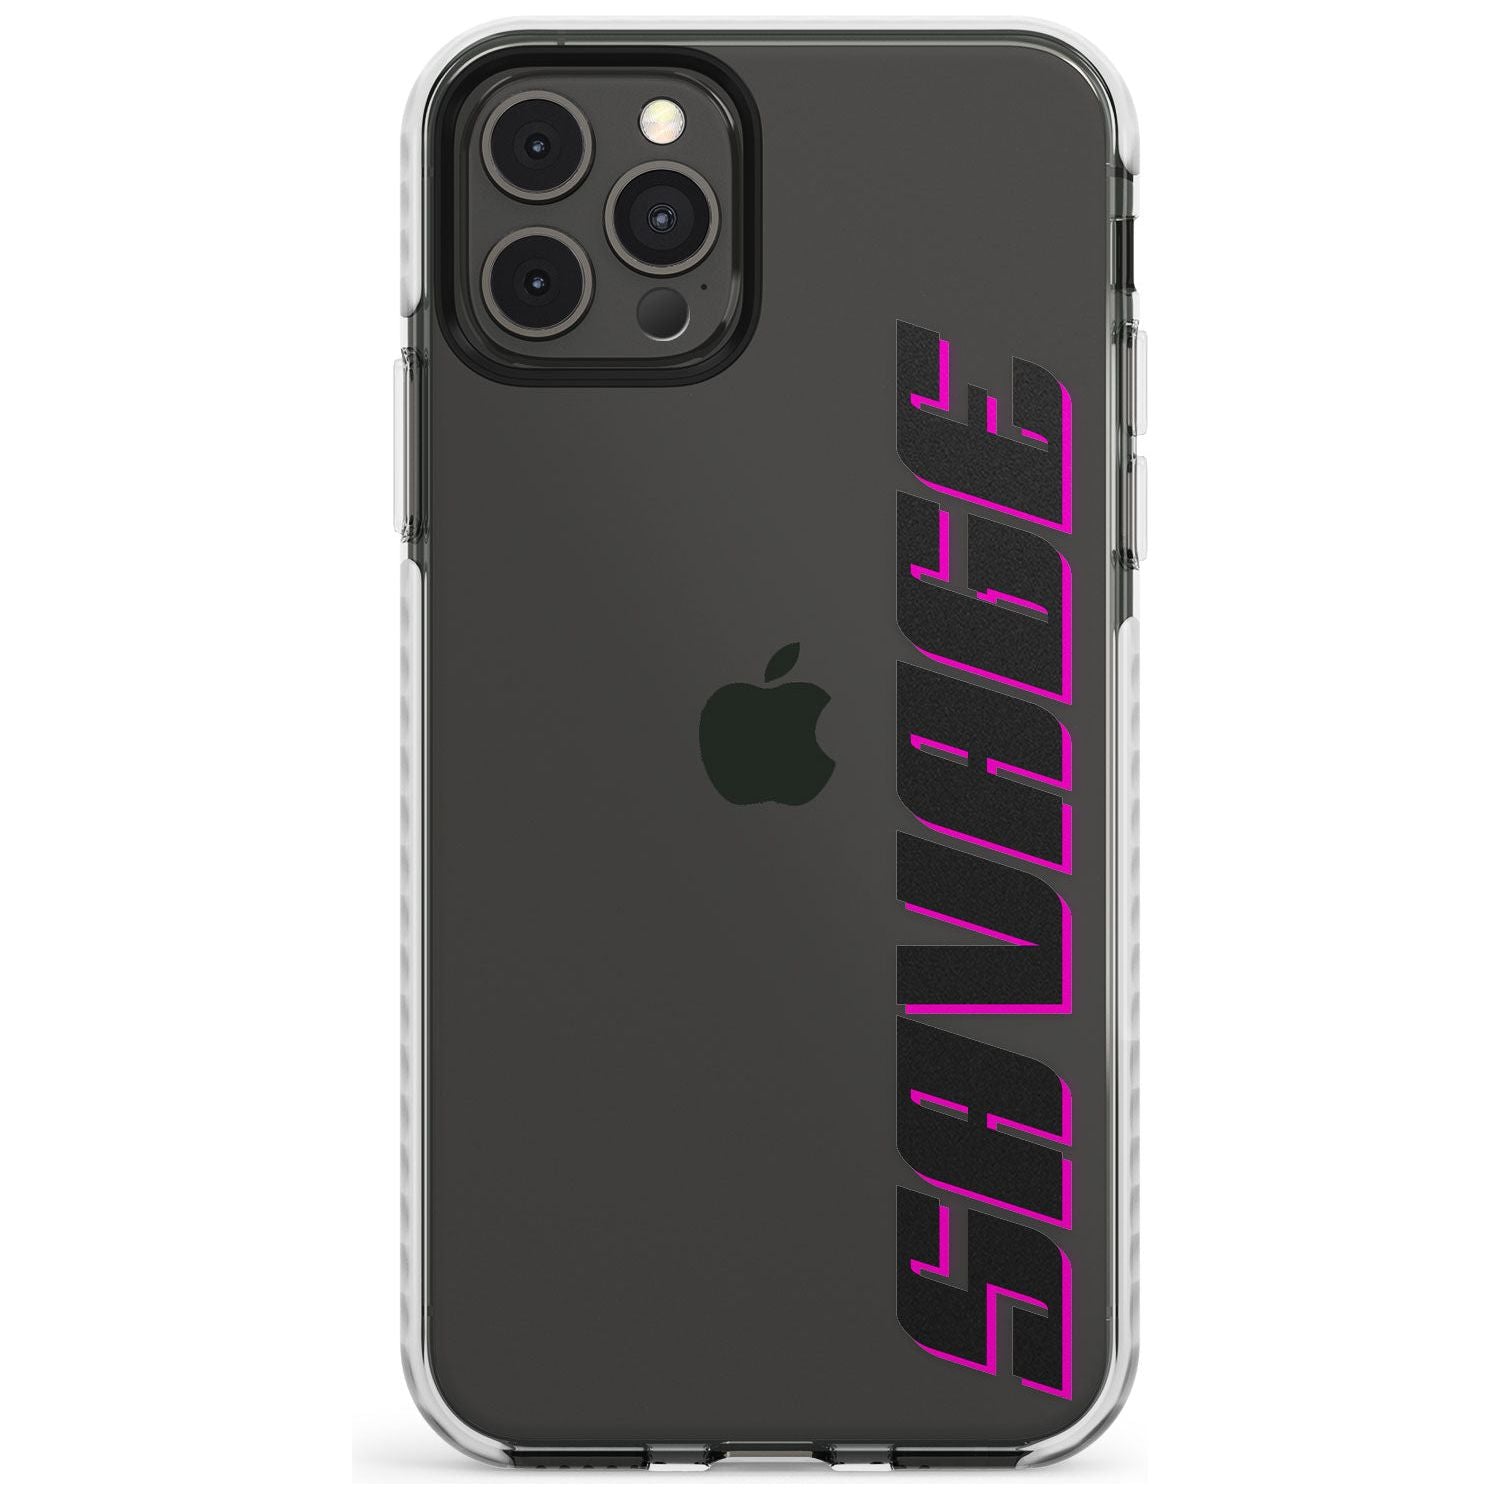 Custom Iphone Case 4C Slim TPU Phone Case for iPhone 11 Pro Max